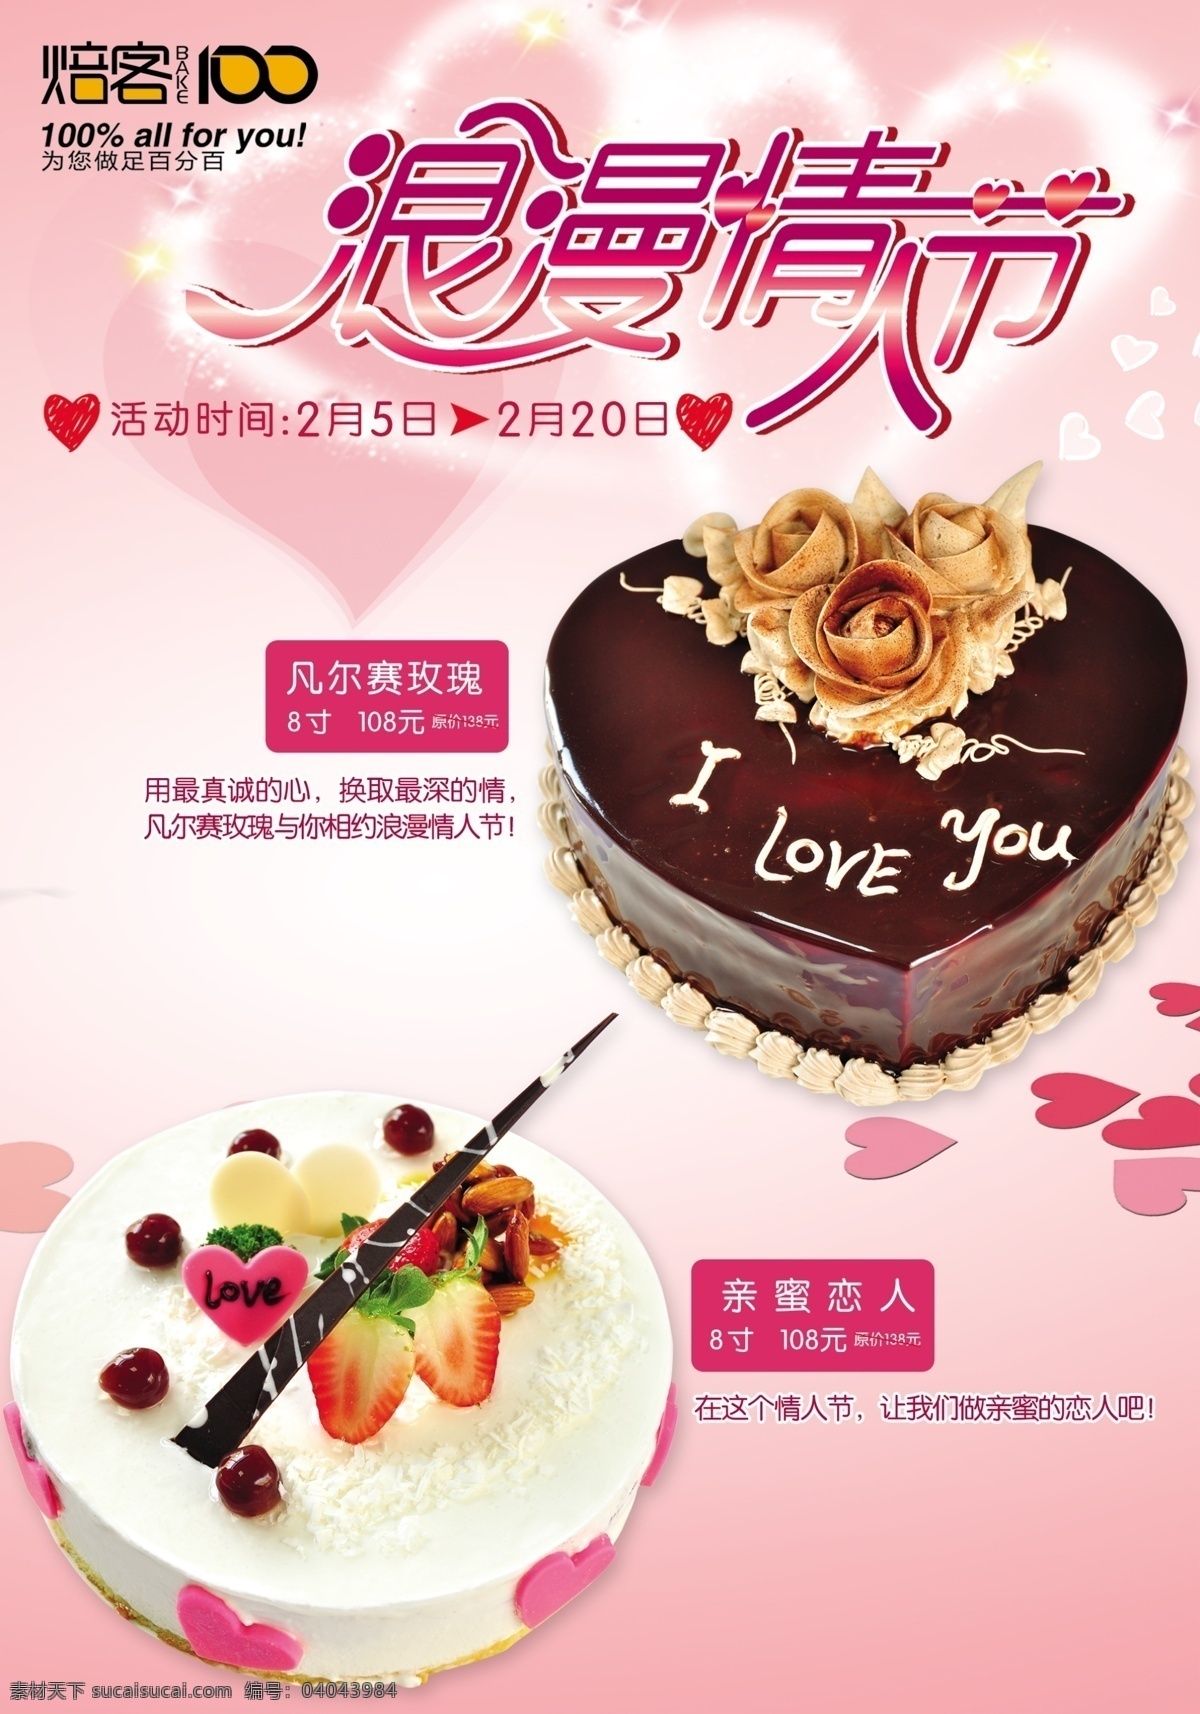 情人节 蛋糕 广告 海报 2012 焙客 百分百 情人节蛋糕 爱心 情人节海报 广告设计模板 源文件 分层 红色